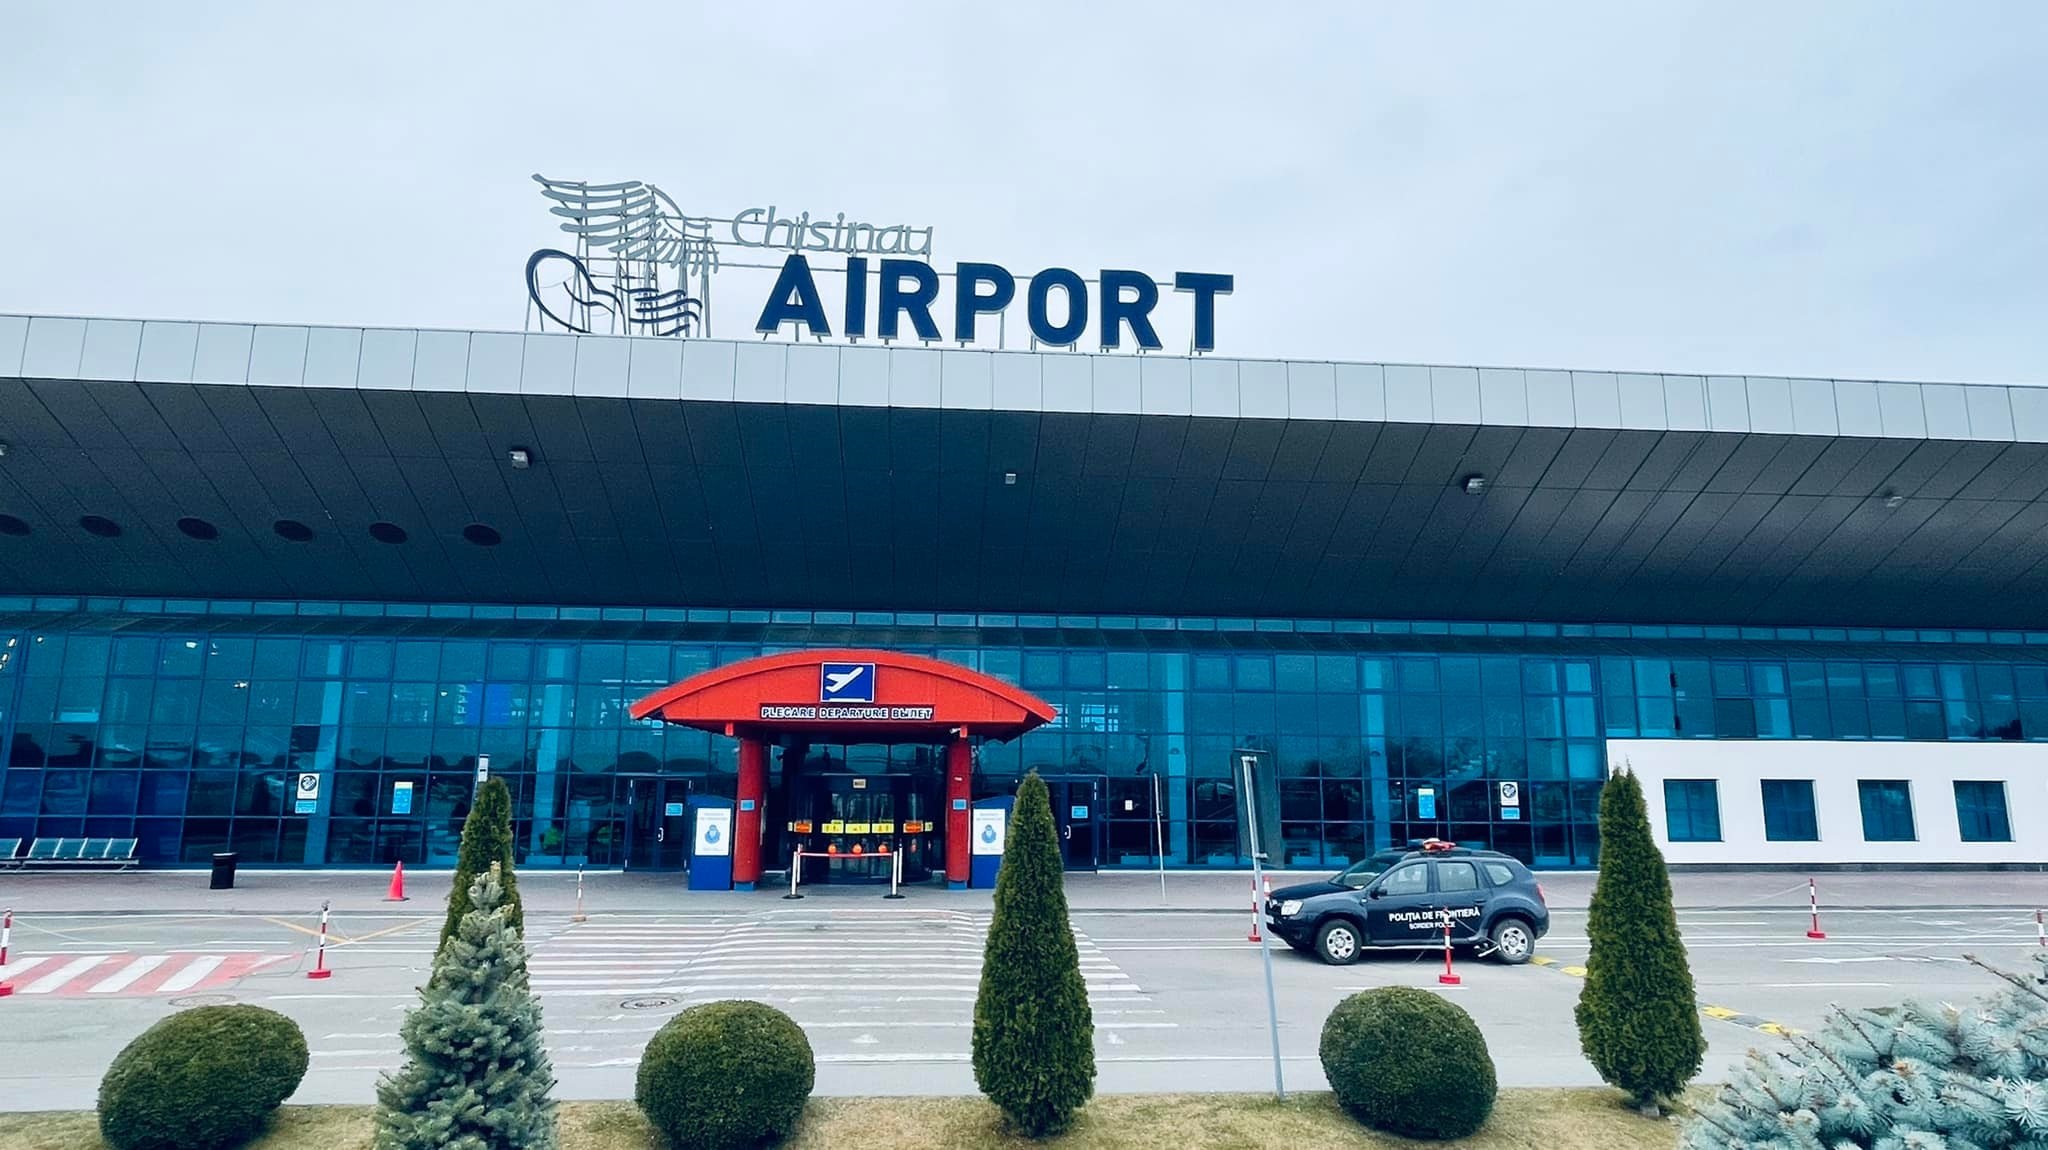 Aeroportul Chișinău, Alertă de călătorie în Orientul Mijlociu